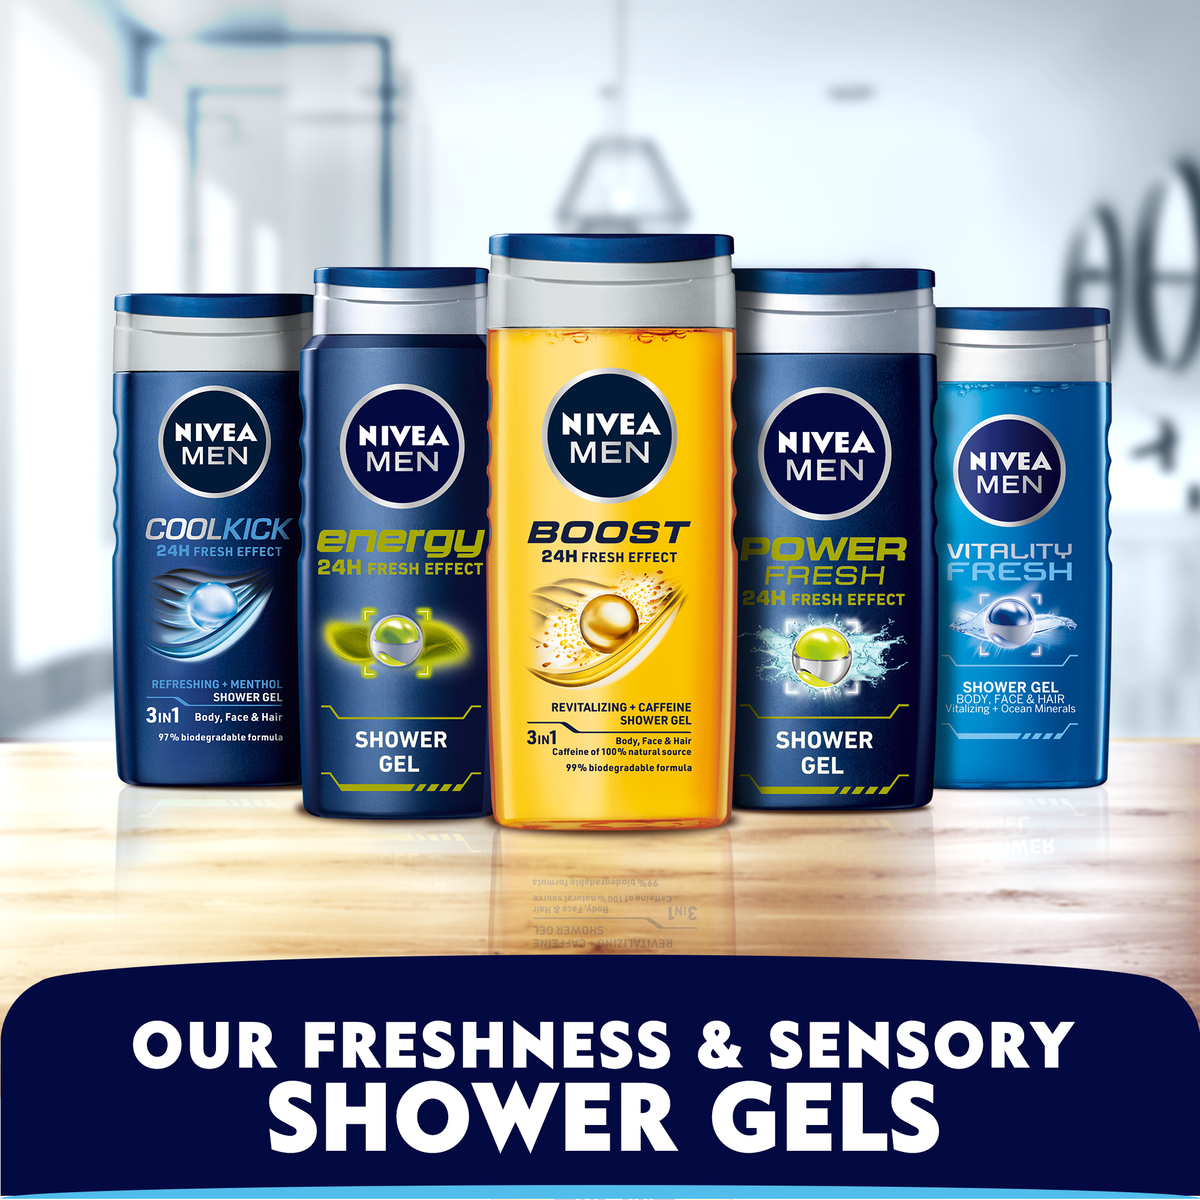 Nivea Shower Gel Energy For Men 500ml